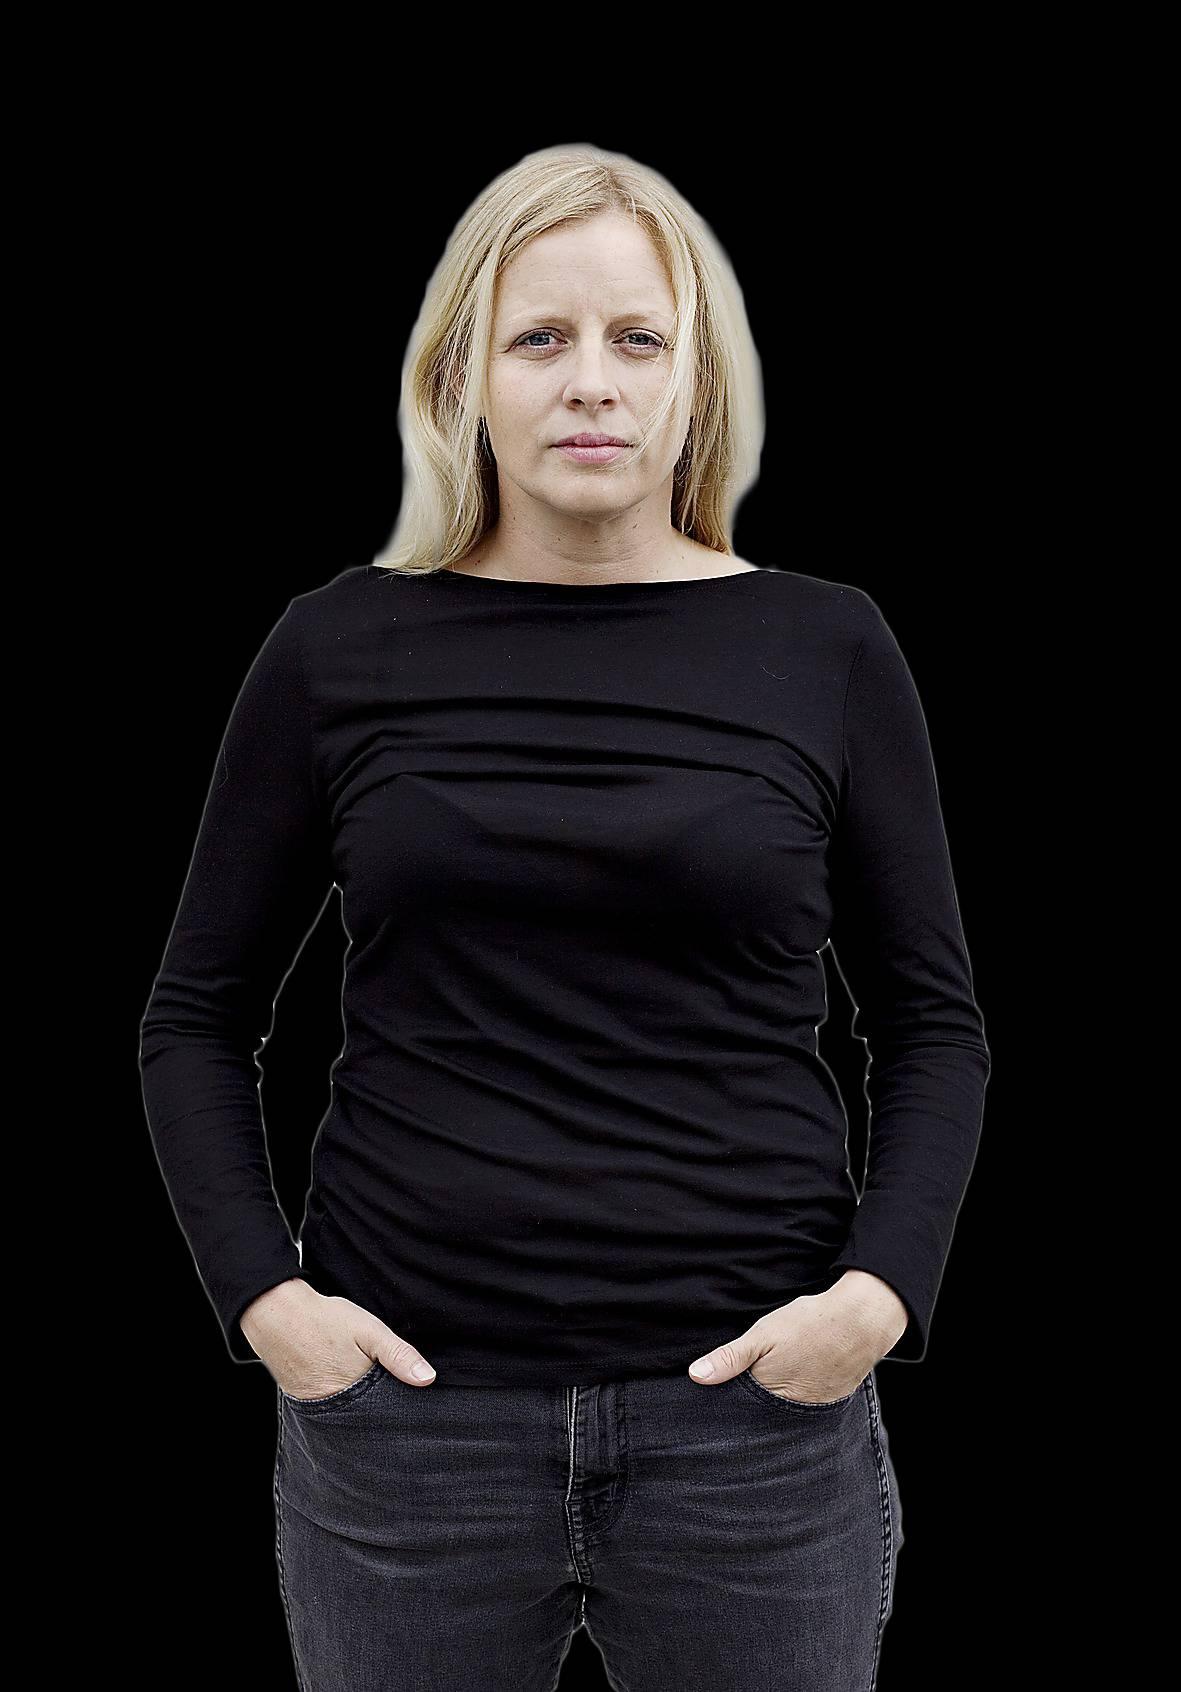 Poeten och litteraturkritikern Anna Hallberg (född 1975) fick Aftonbladets litteraturpris 2004.